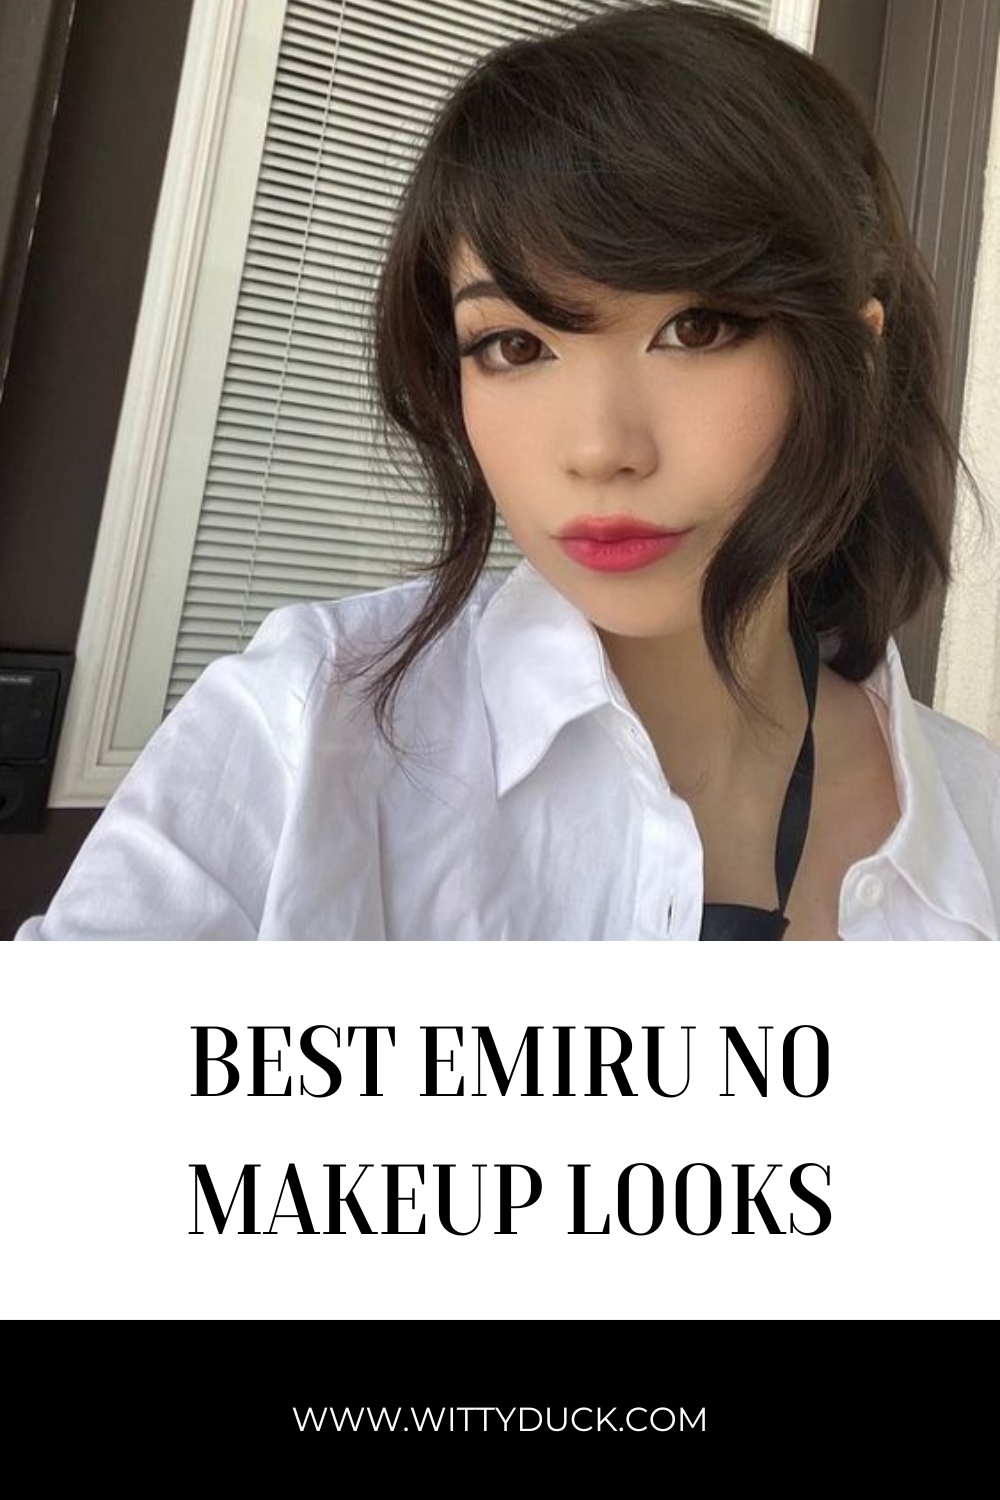 10+ Best Emiru no makeup looks